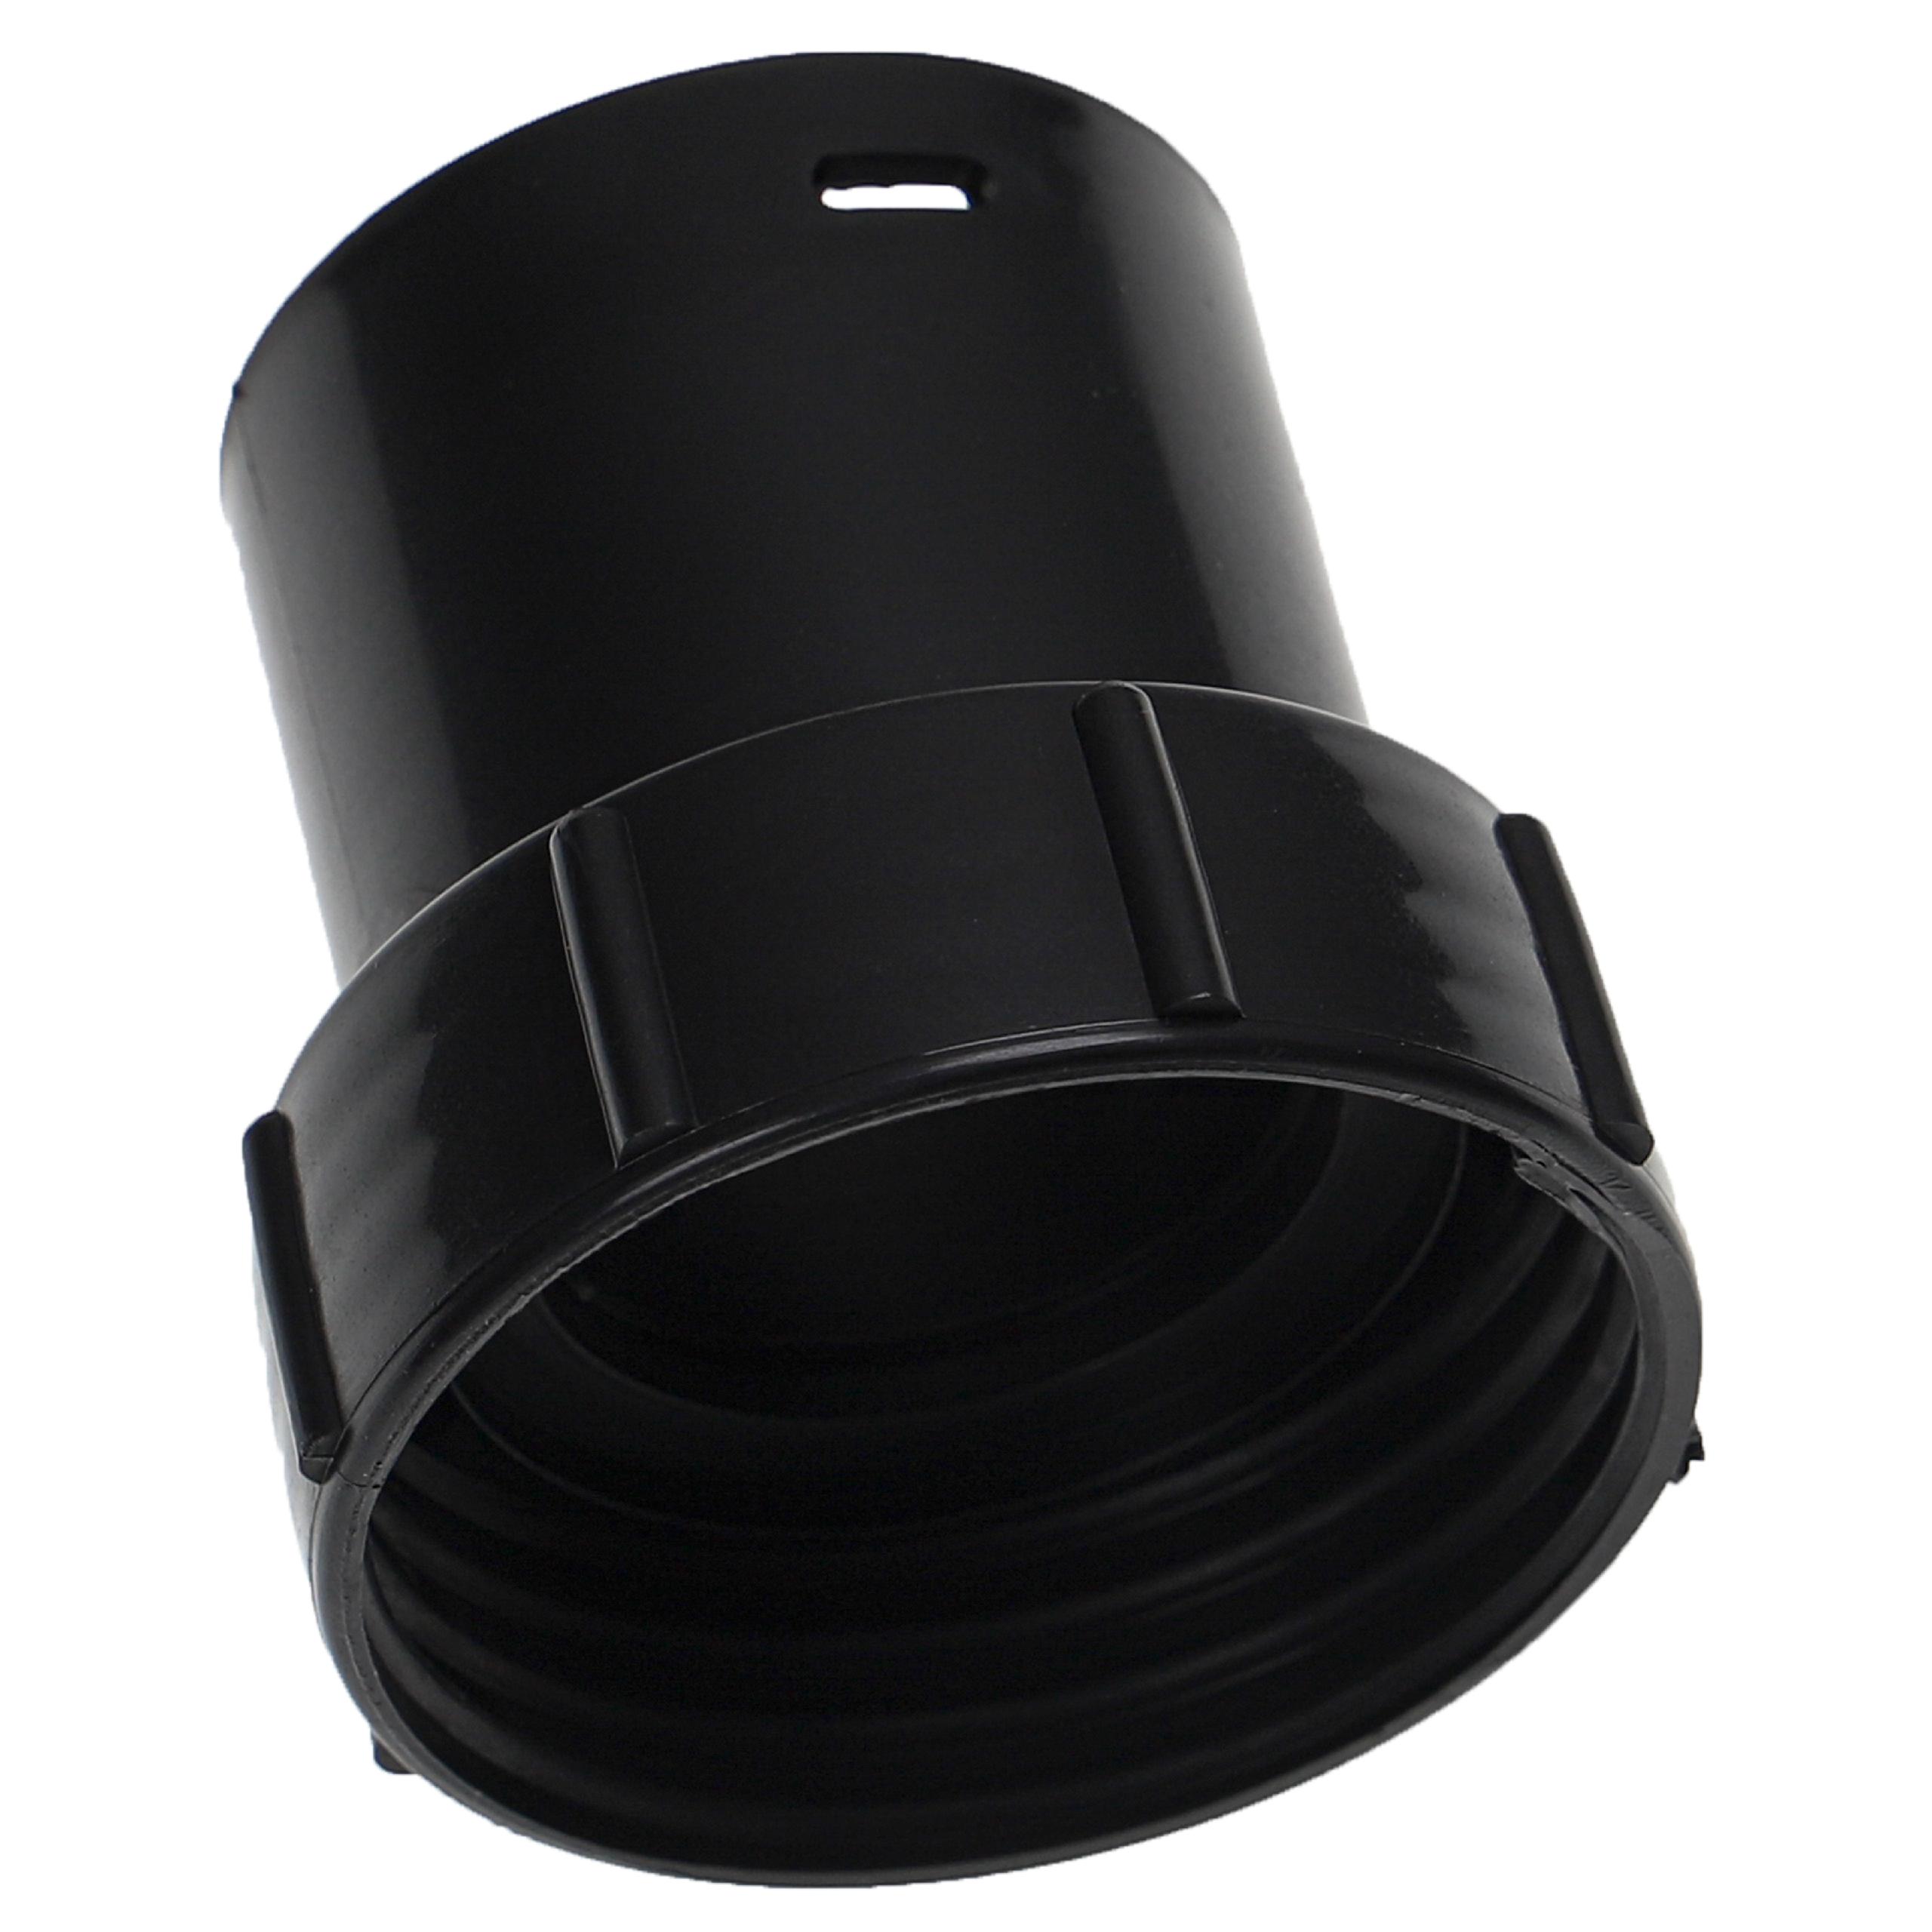 Adattatore per tubo flessibile per Numatic / Nilfisk Charles aspiratori ecc - 32 mm Connettore rotondo, plasti